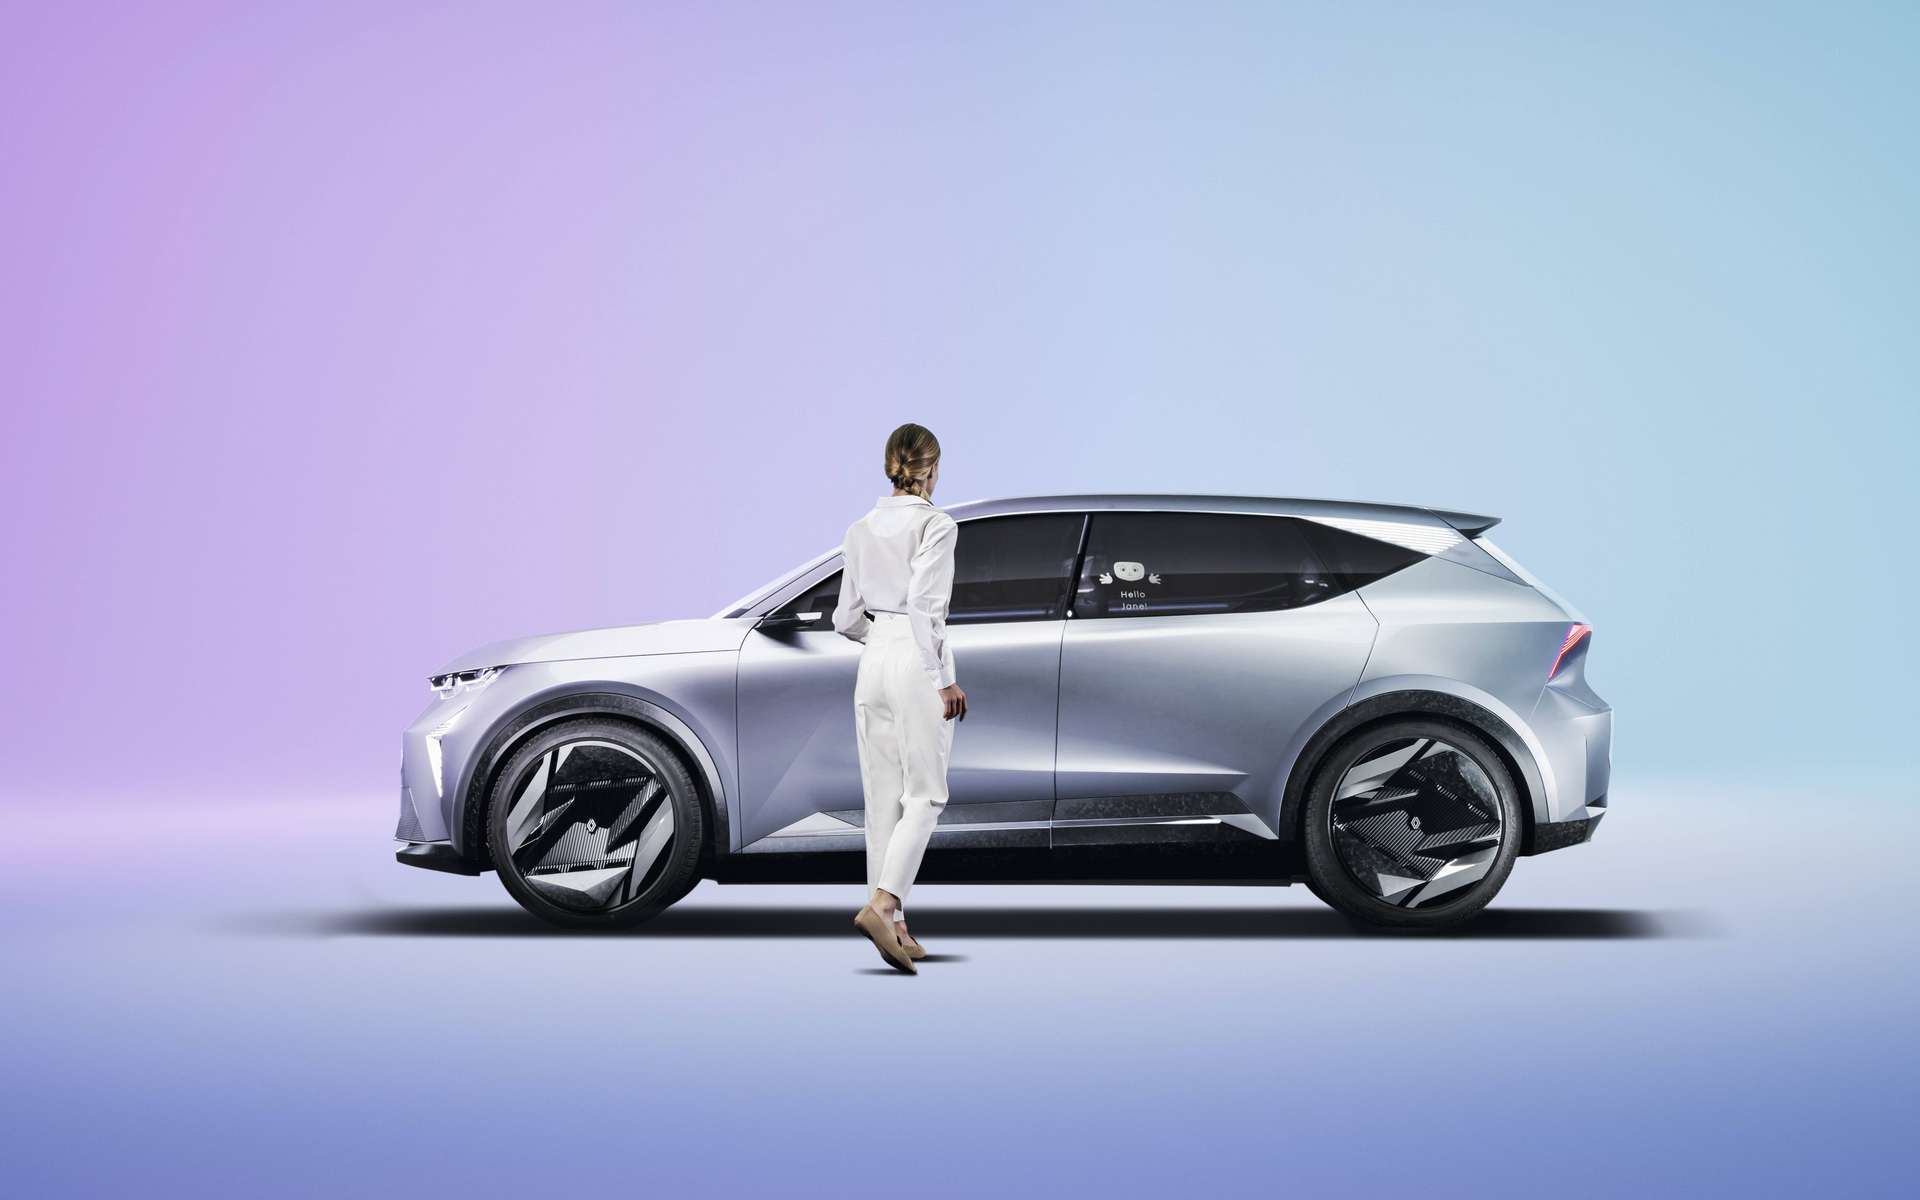 Découvrez le futur avec le concept car Human First Vision de Renault